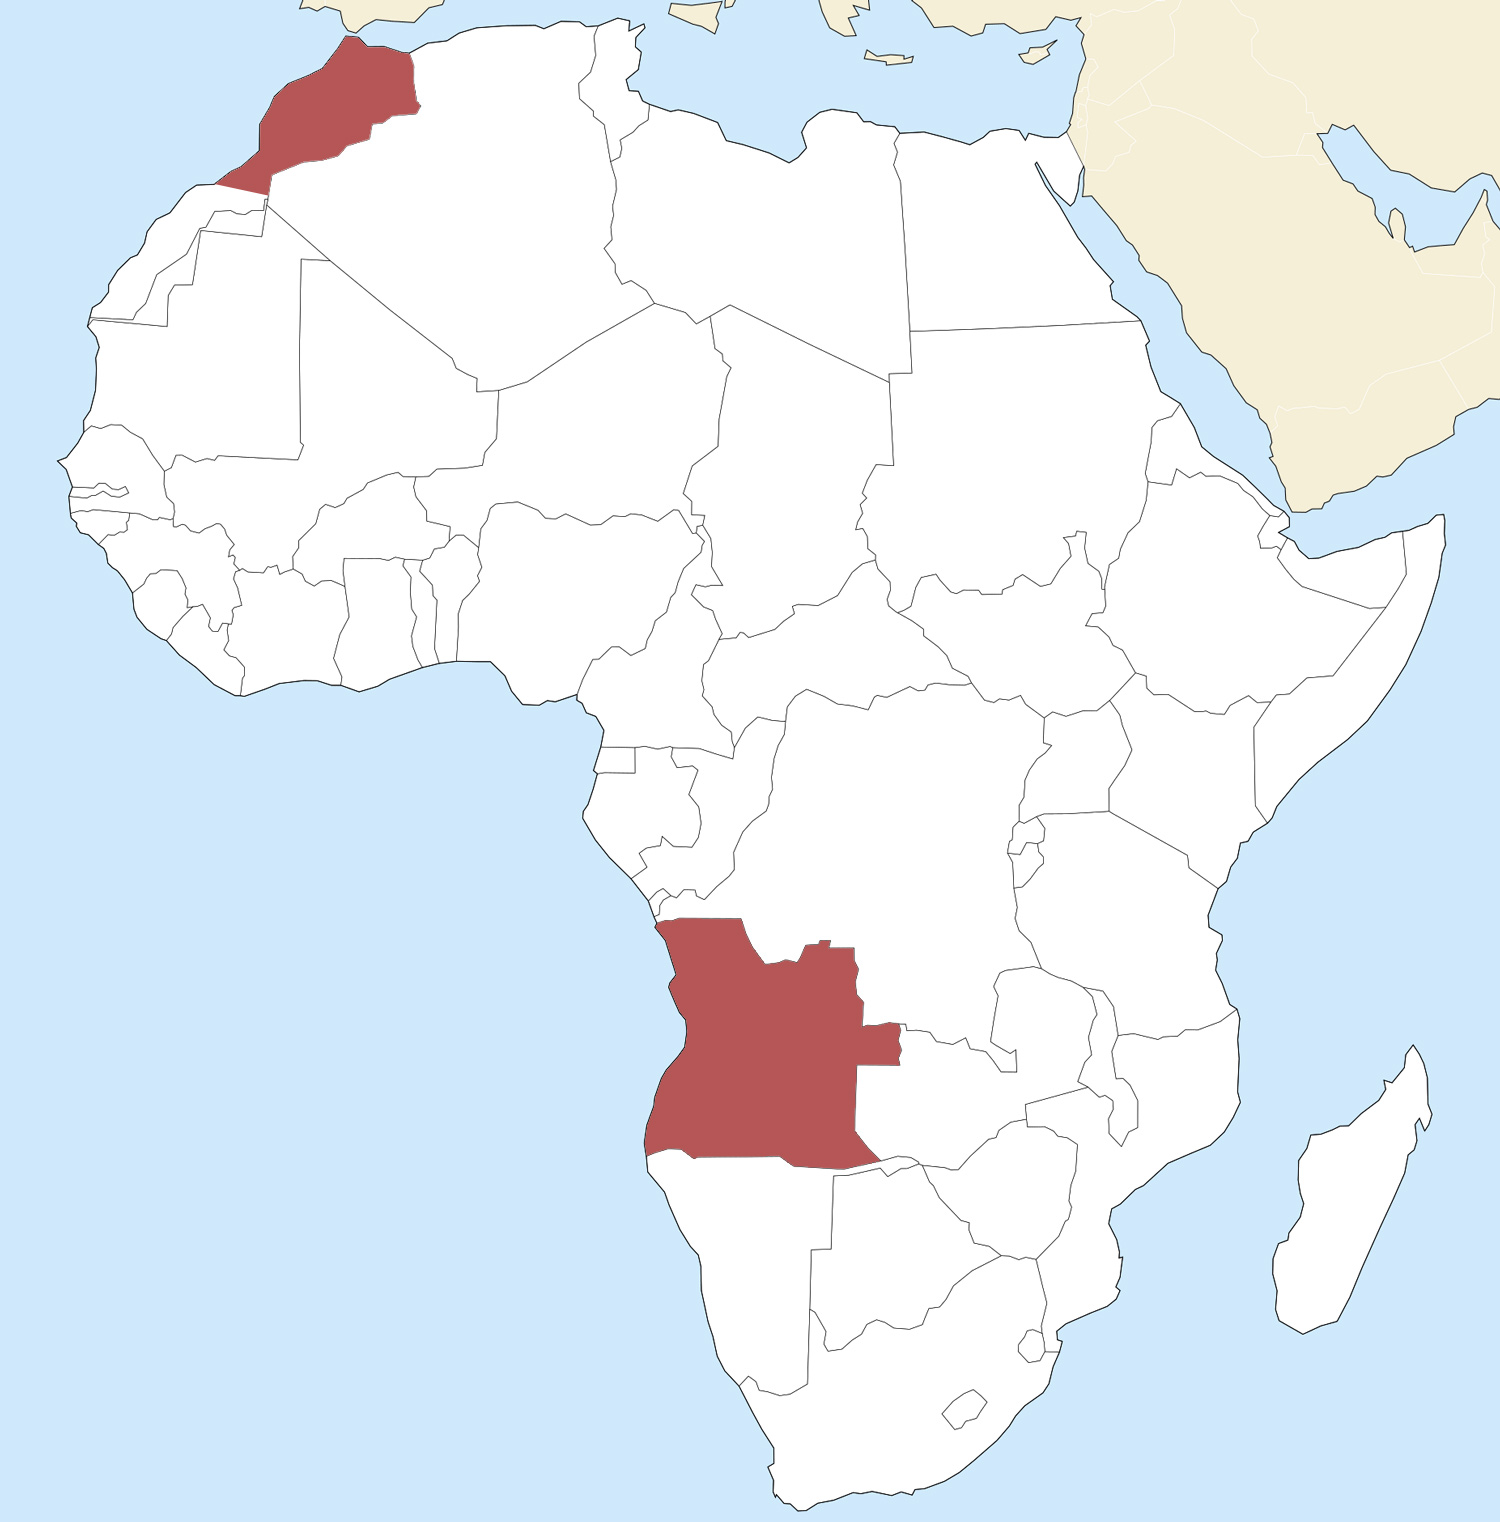 Angola and Morocco